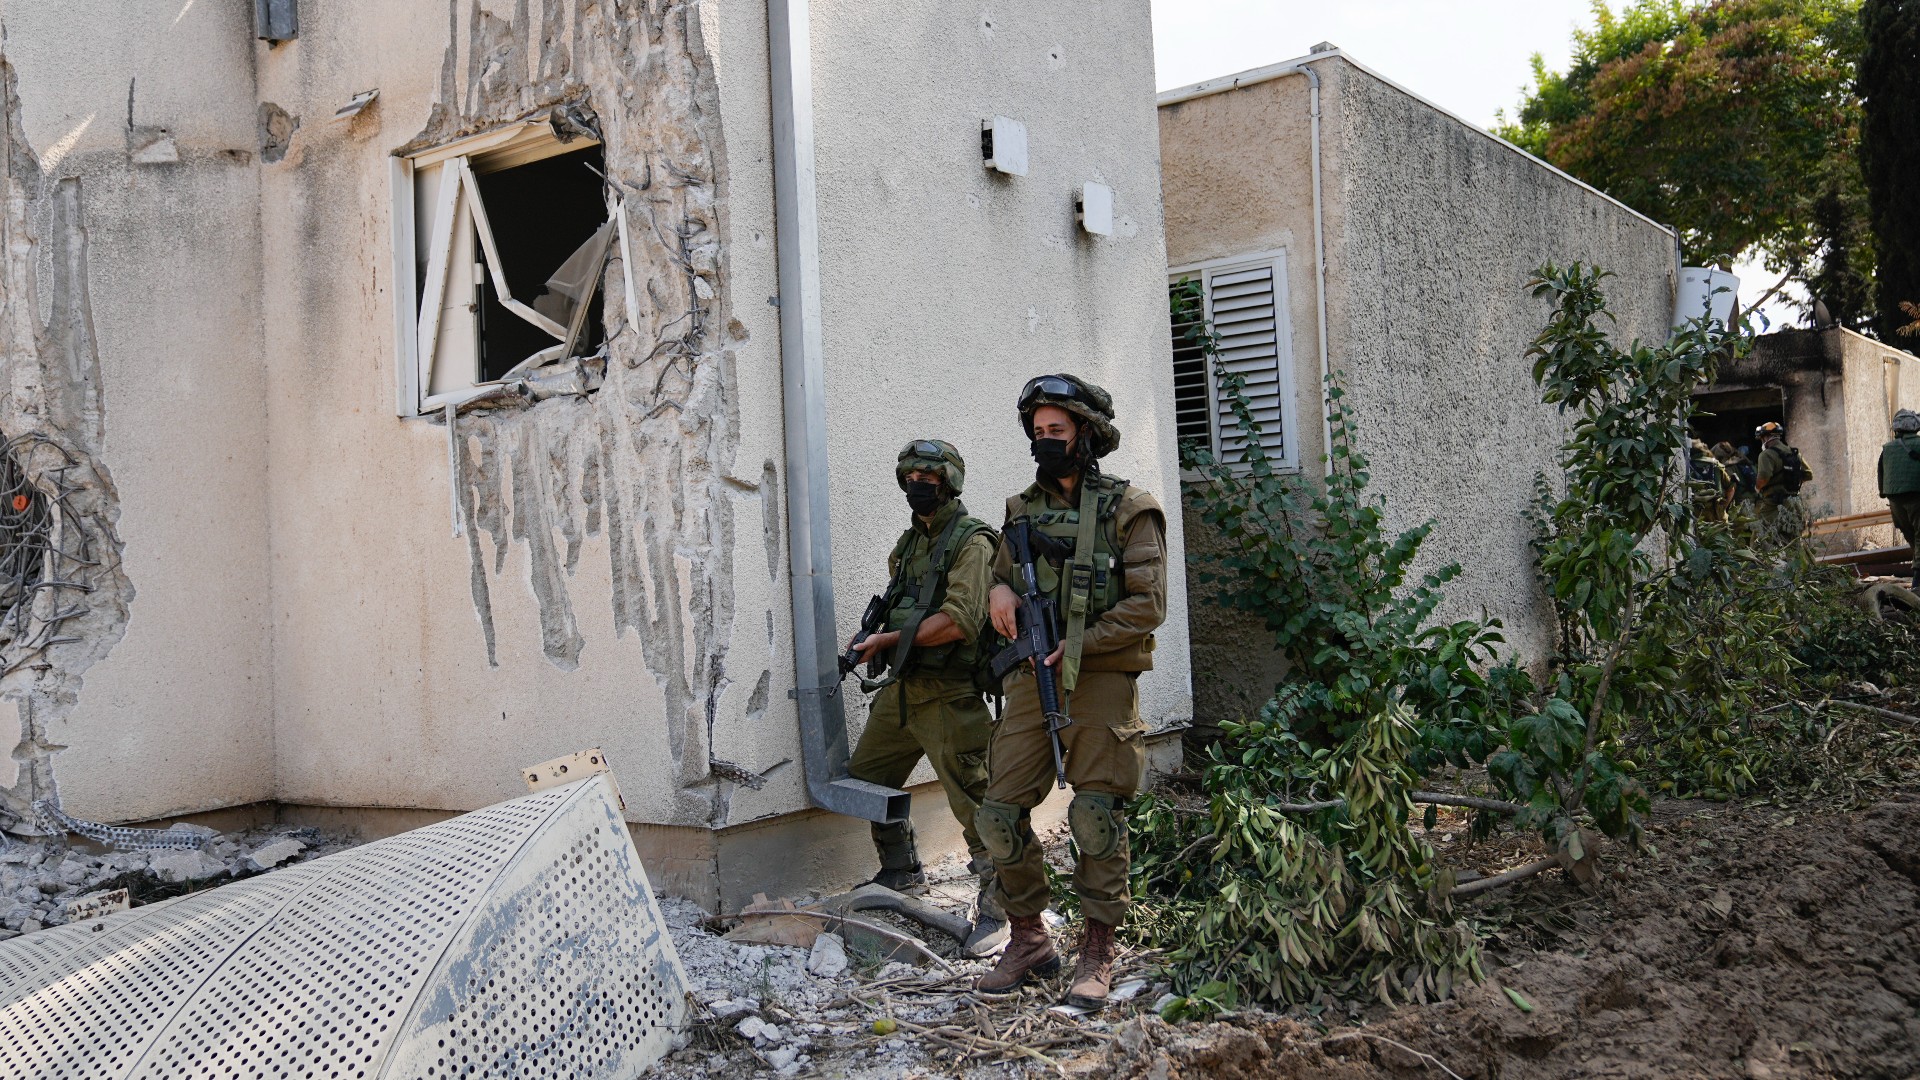 Israeli soldiers stand guard in kibbutz Kfar Azza on 10 October (AP)